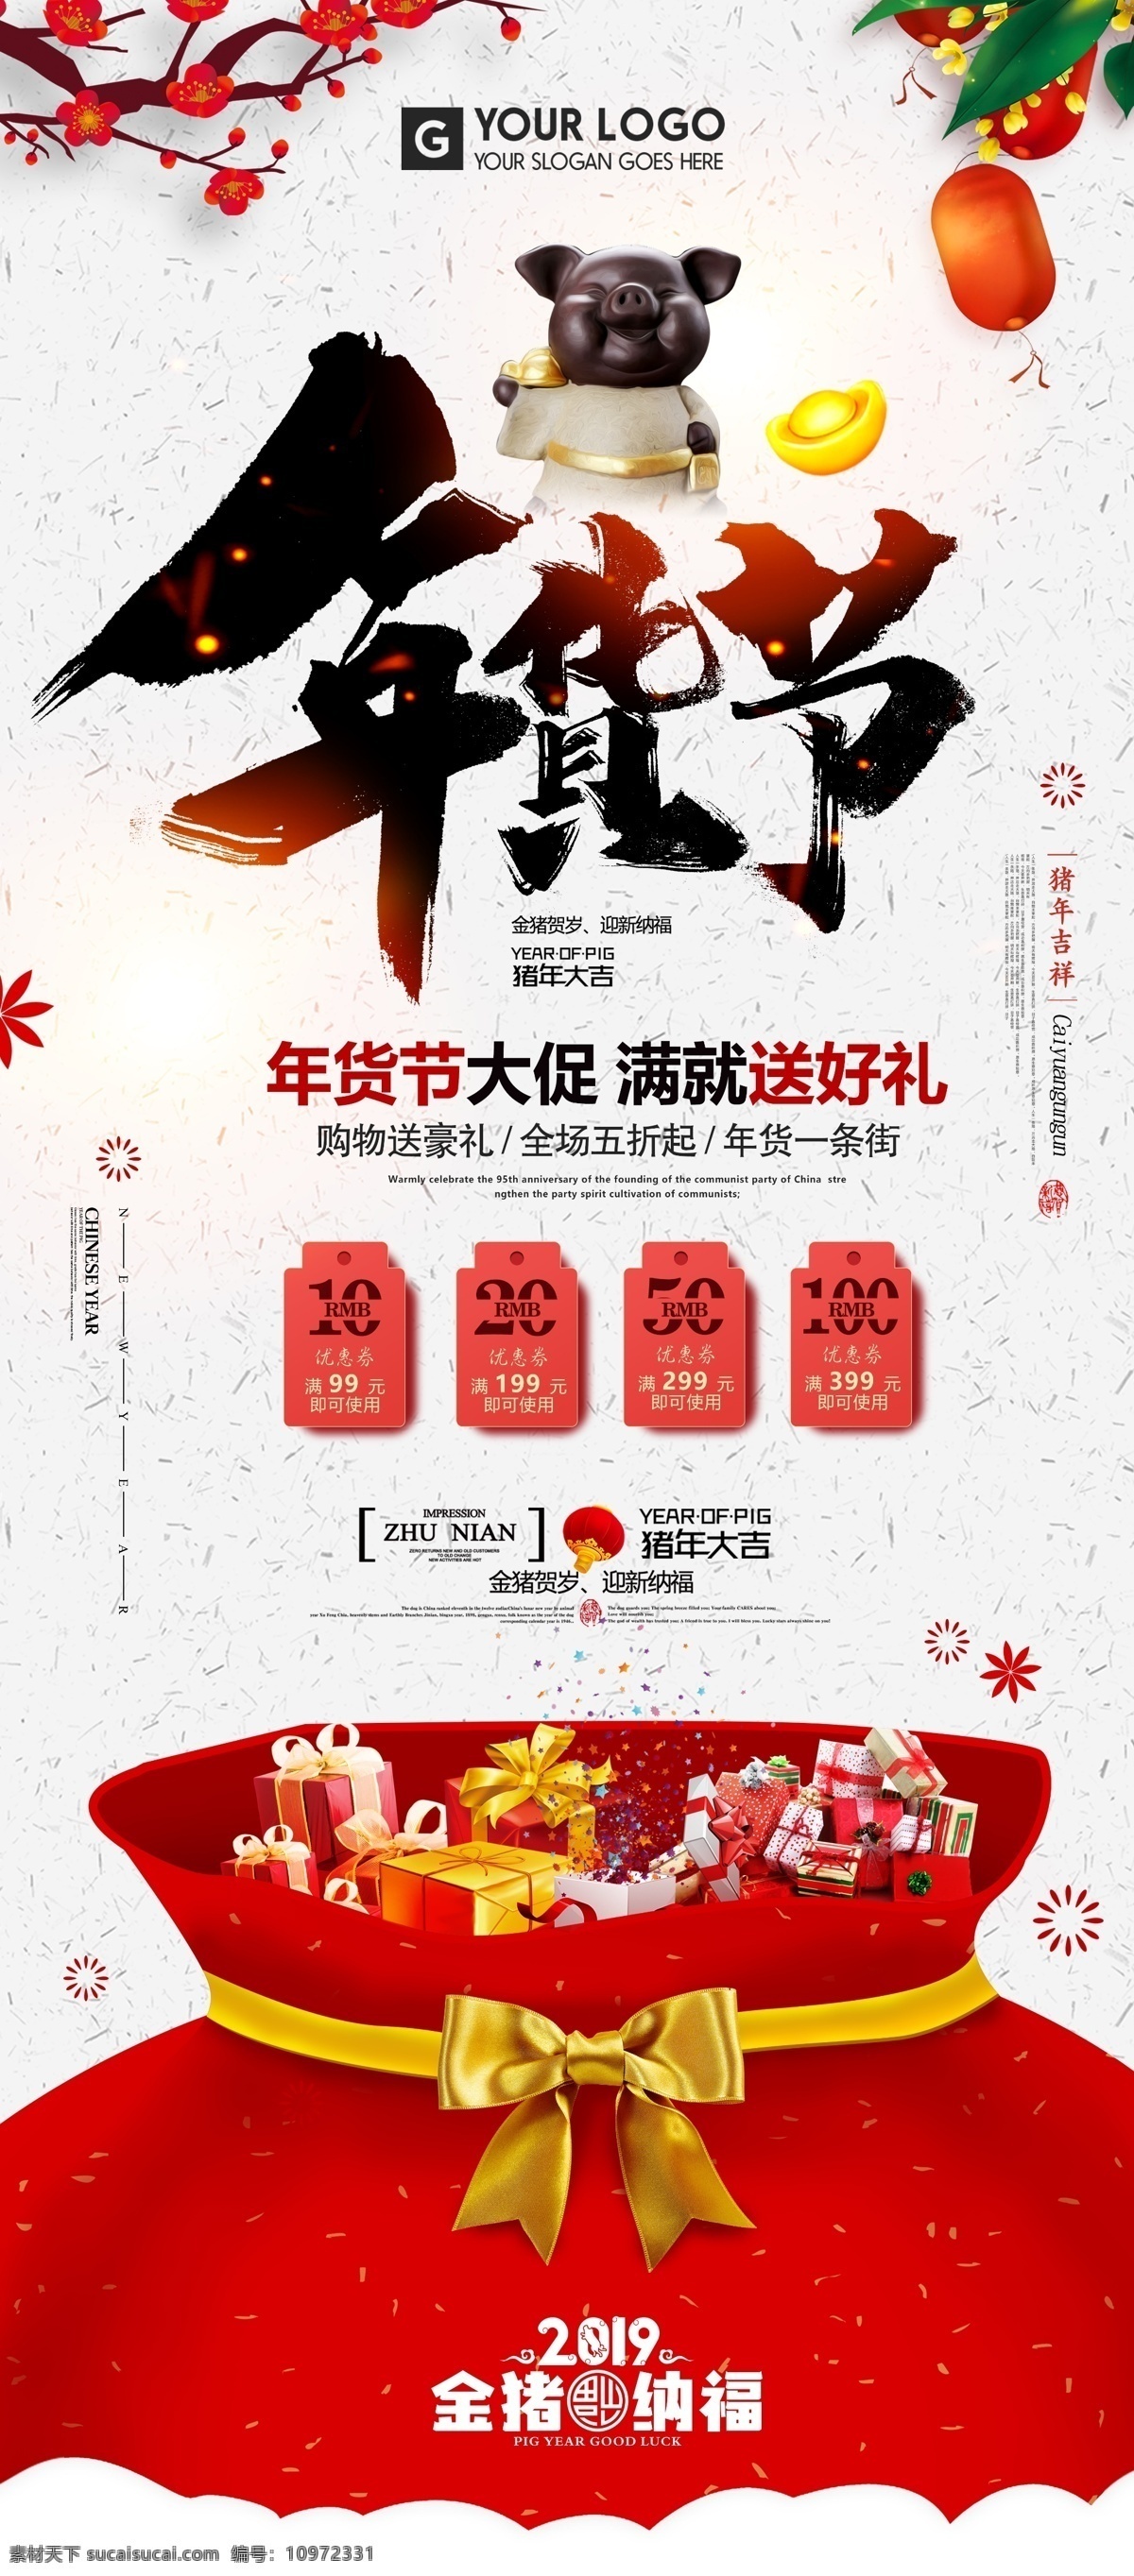 中国 风 年货 节 促销 易拉宝 展架 展板 易拉宝模板 免费 x展架设计 公司x展架 企业 模板 创意展架设计 时尚展架设计 宣传广告 画面设计 x 免费模板 免费素材 平面素材